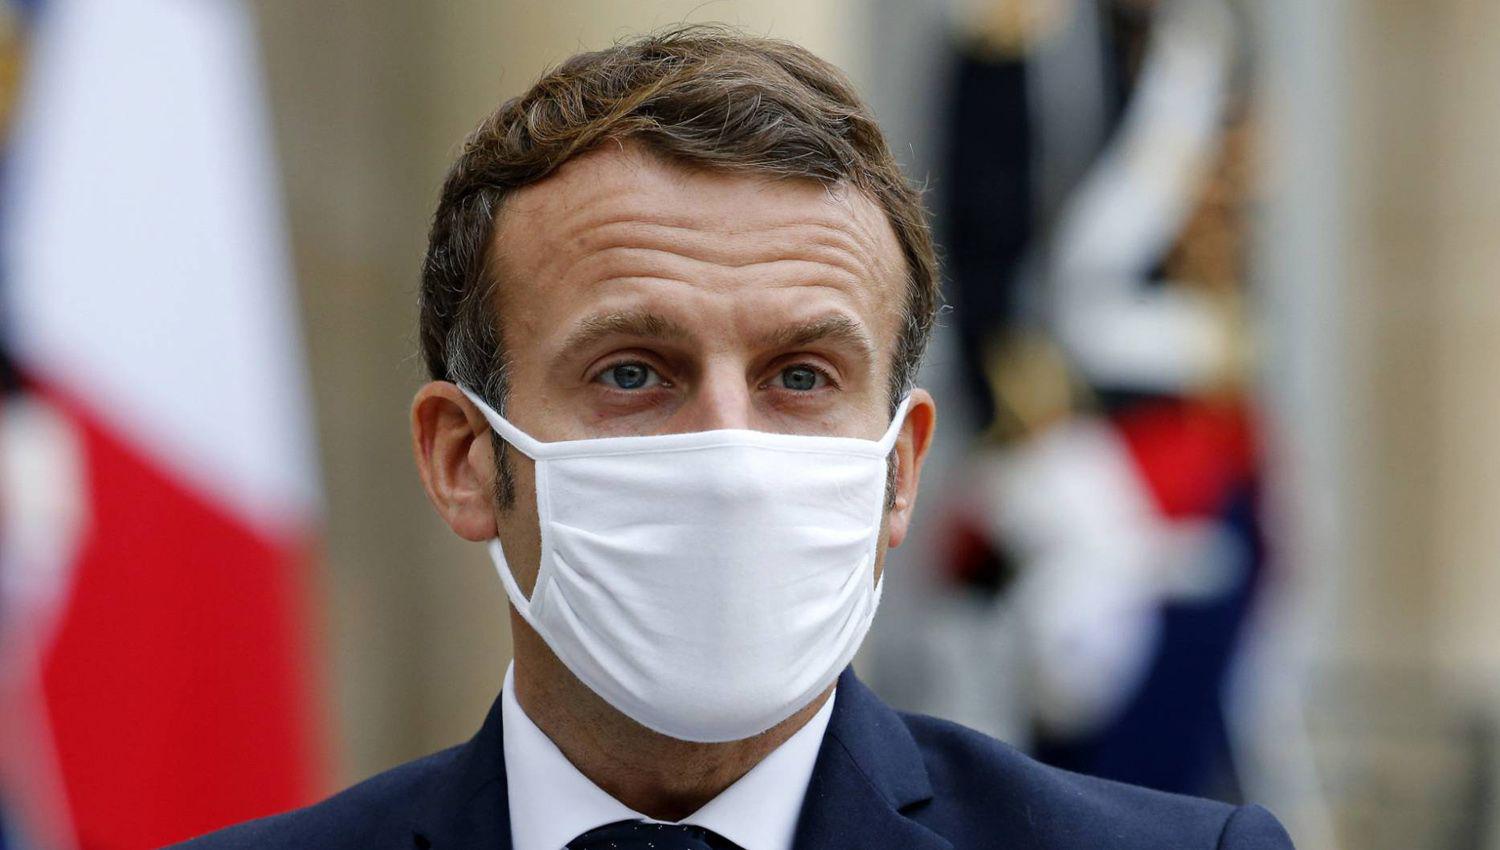 El presidente de Francia Emmanuel Macron anunció la nueva disposición